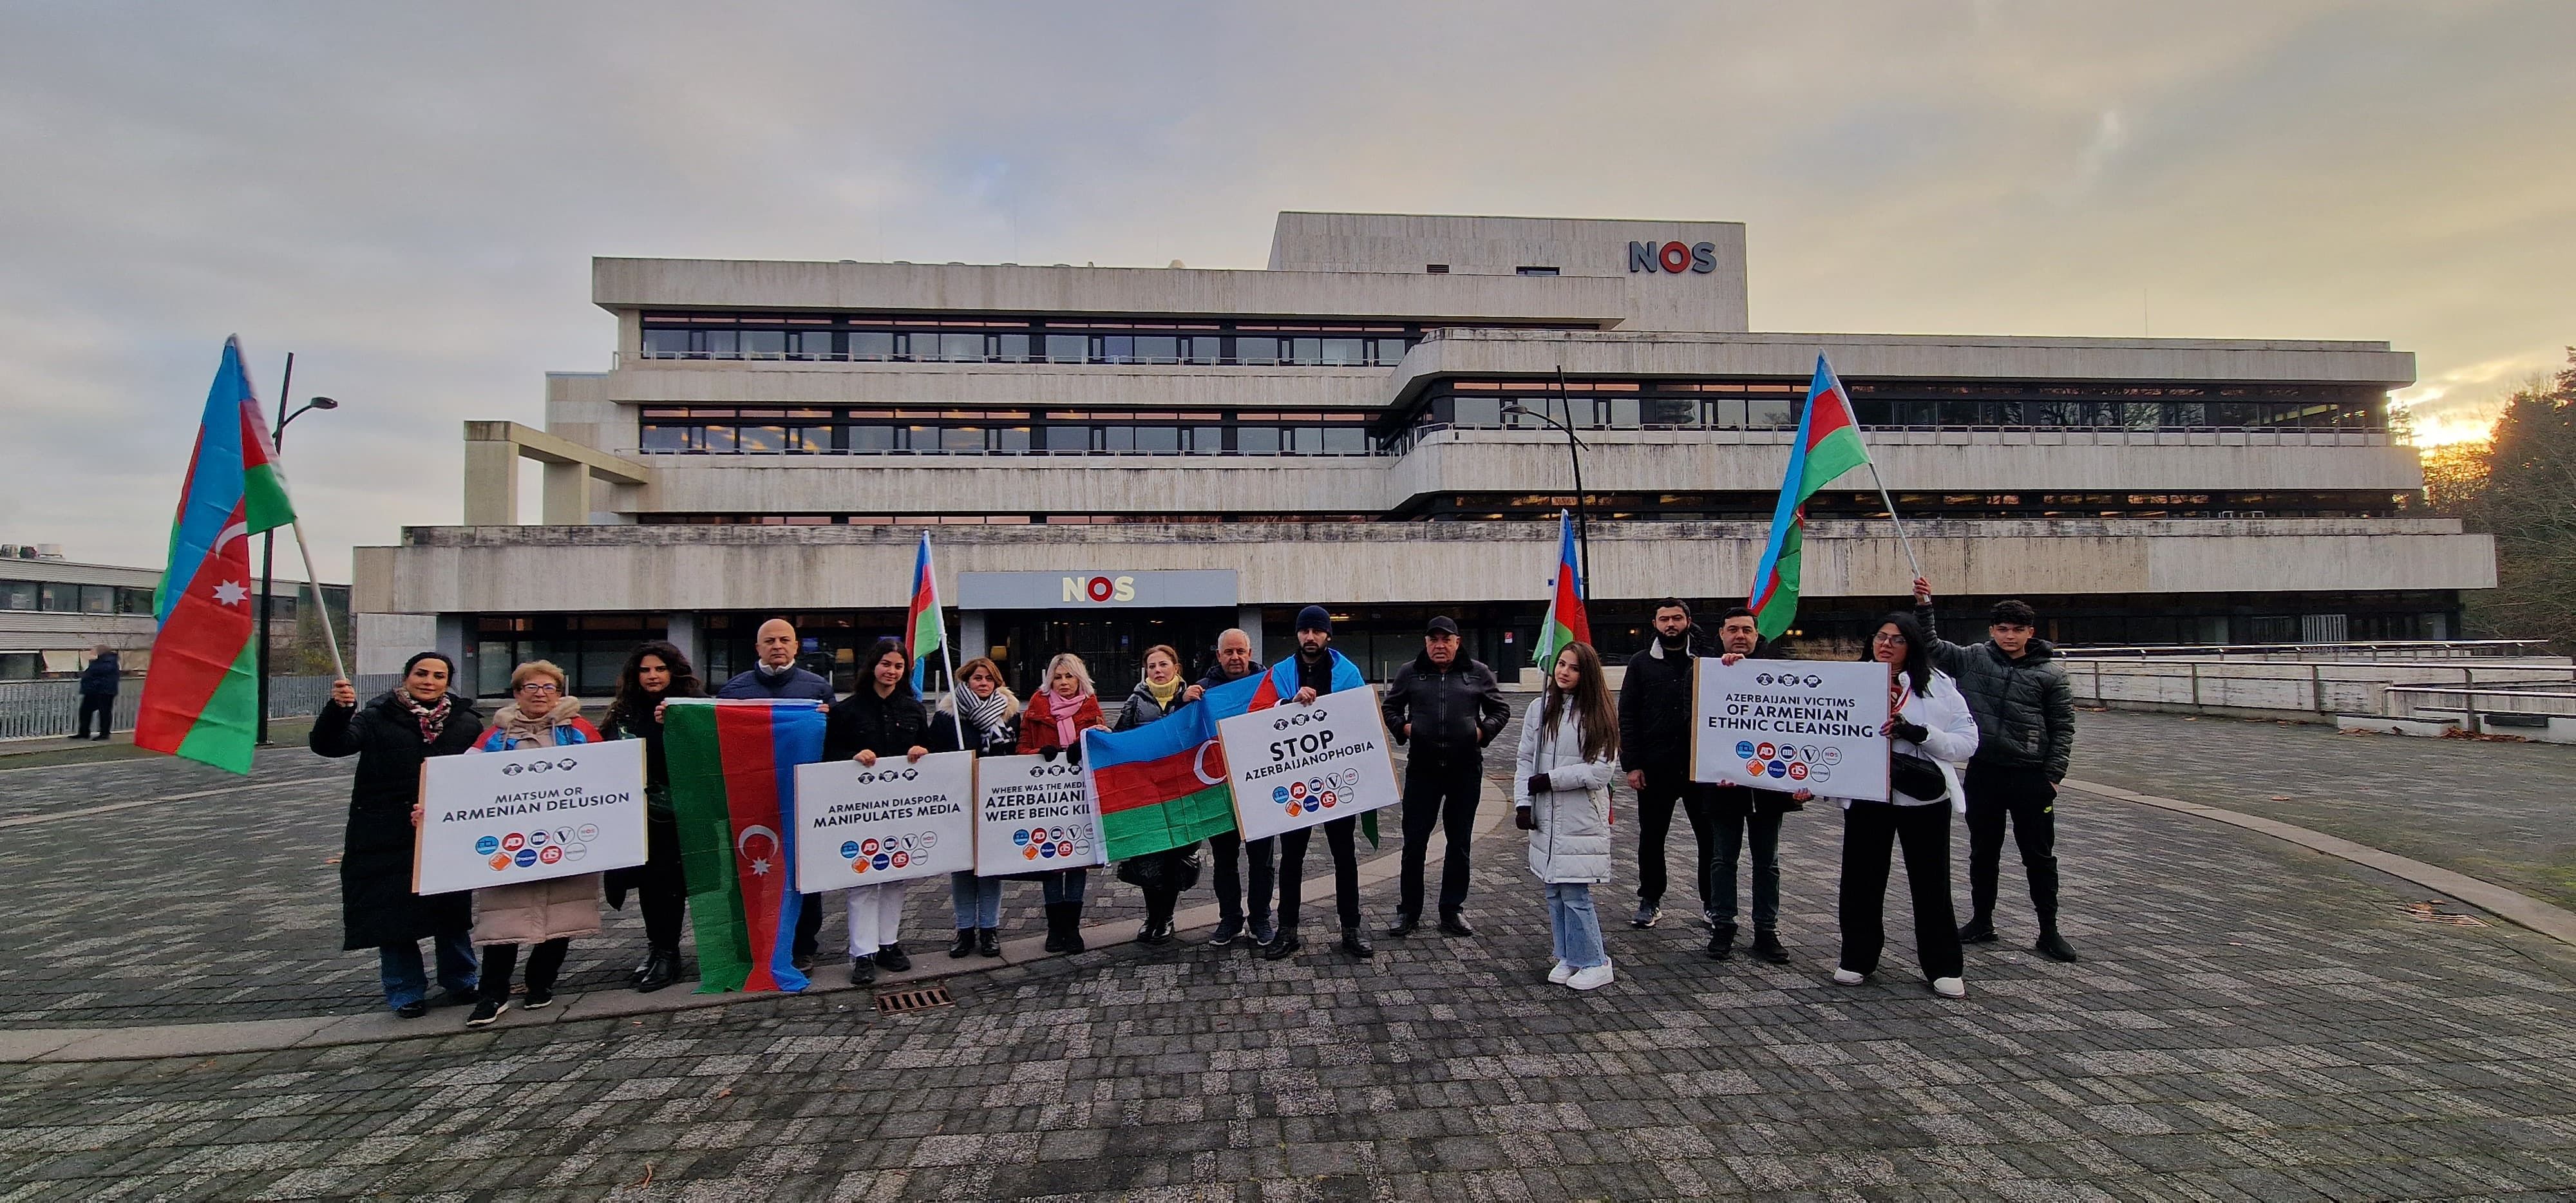 Aзербайджанская община провела в Гааге акцию протеста против нидерландских медиа 